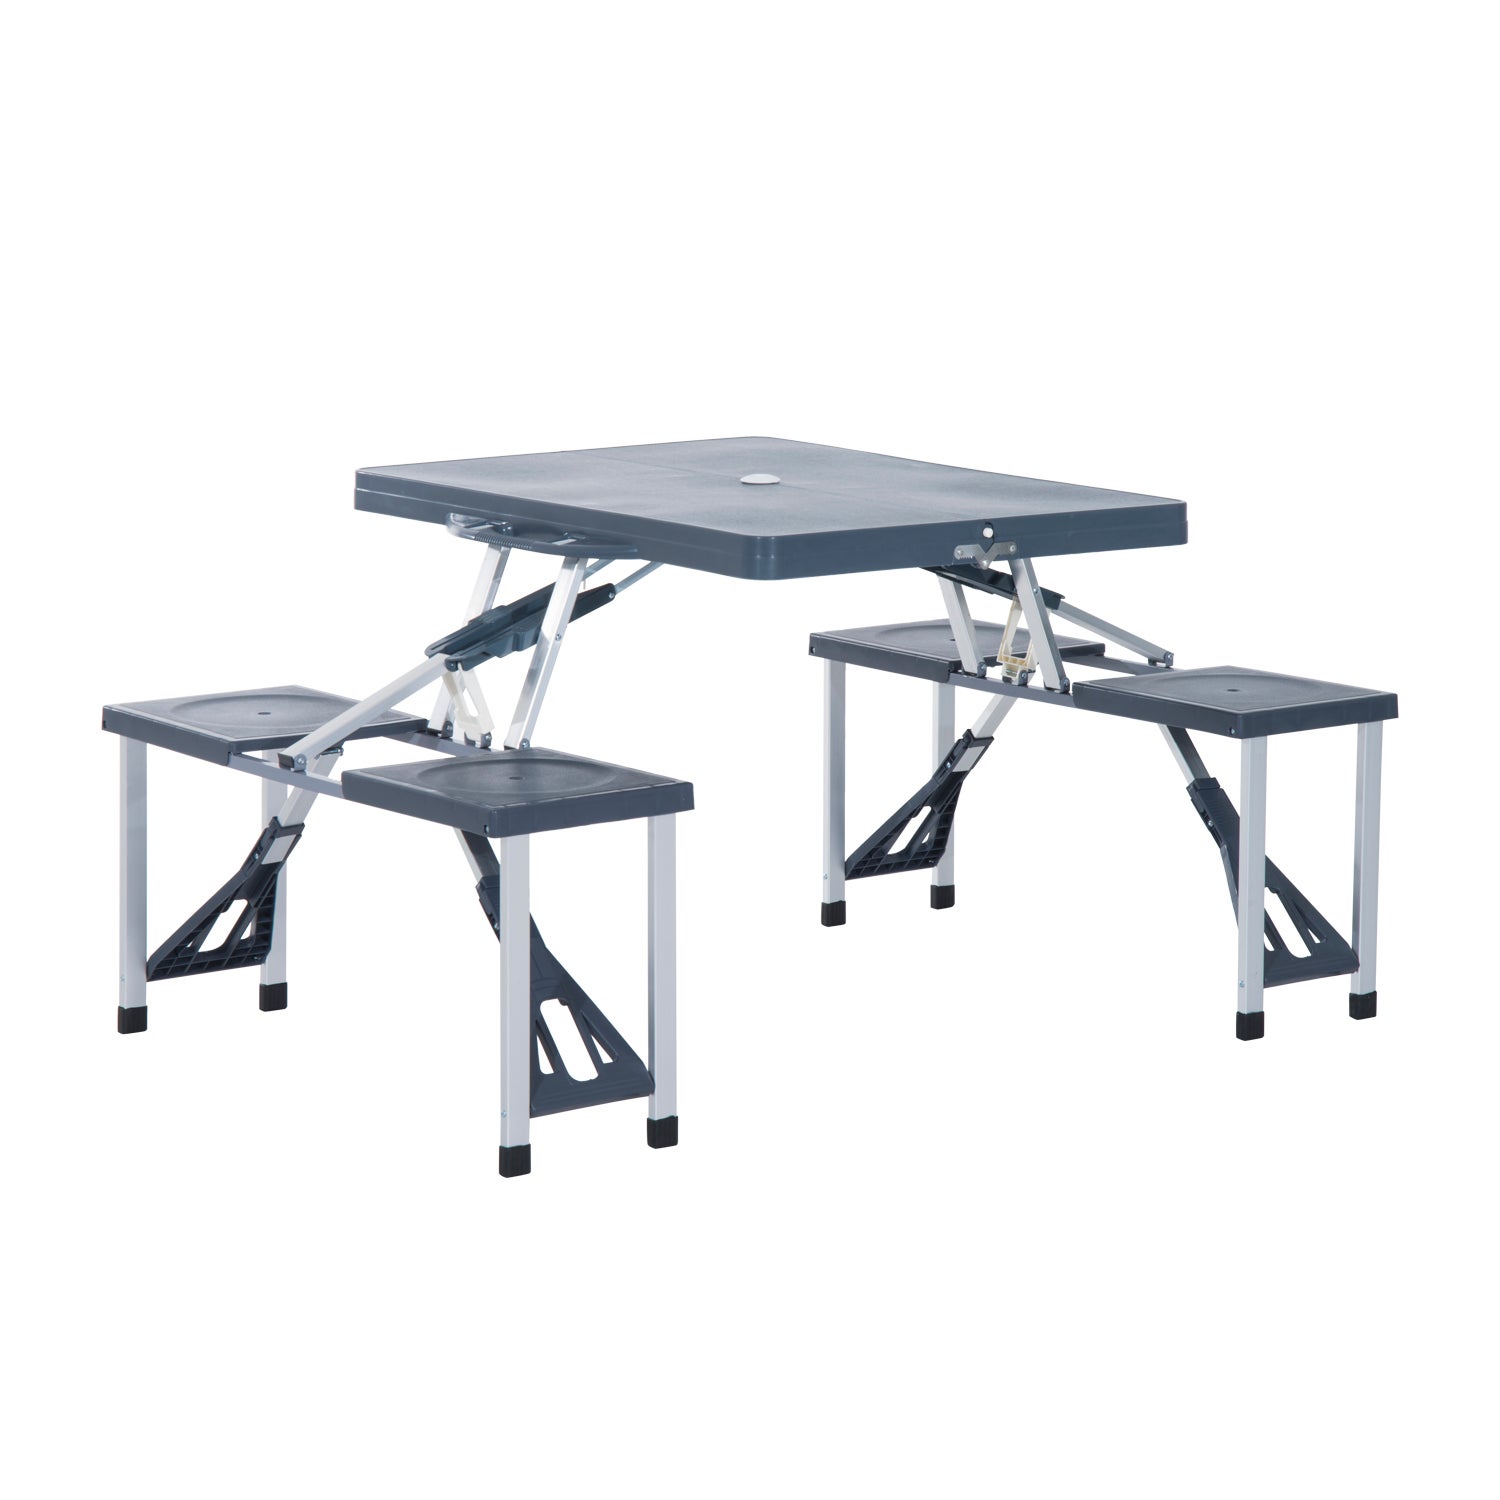 Ultra-Léger Table Pliable Portable Mini Table d’Aluminium pour Camping Randonnée en Plein Air Champagne